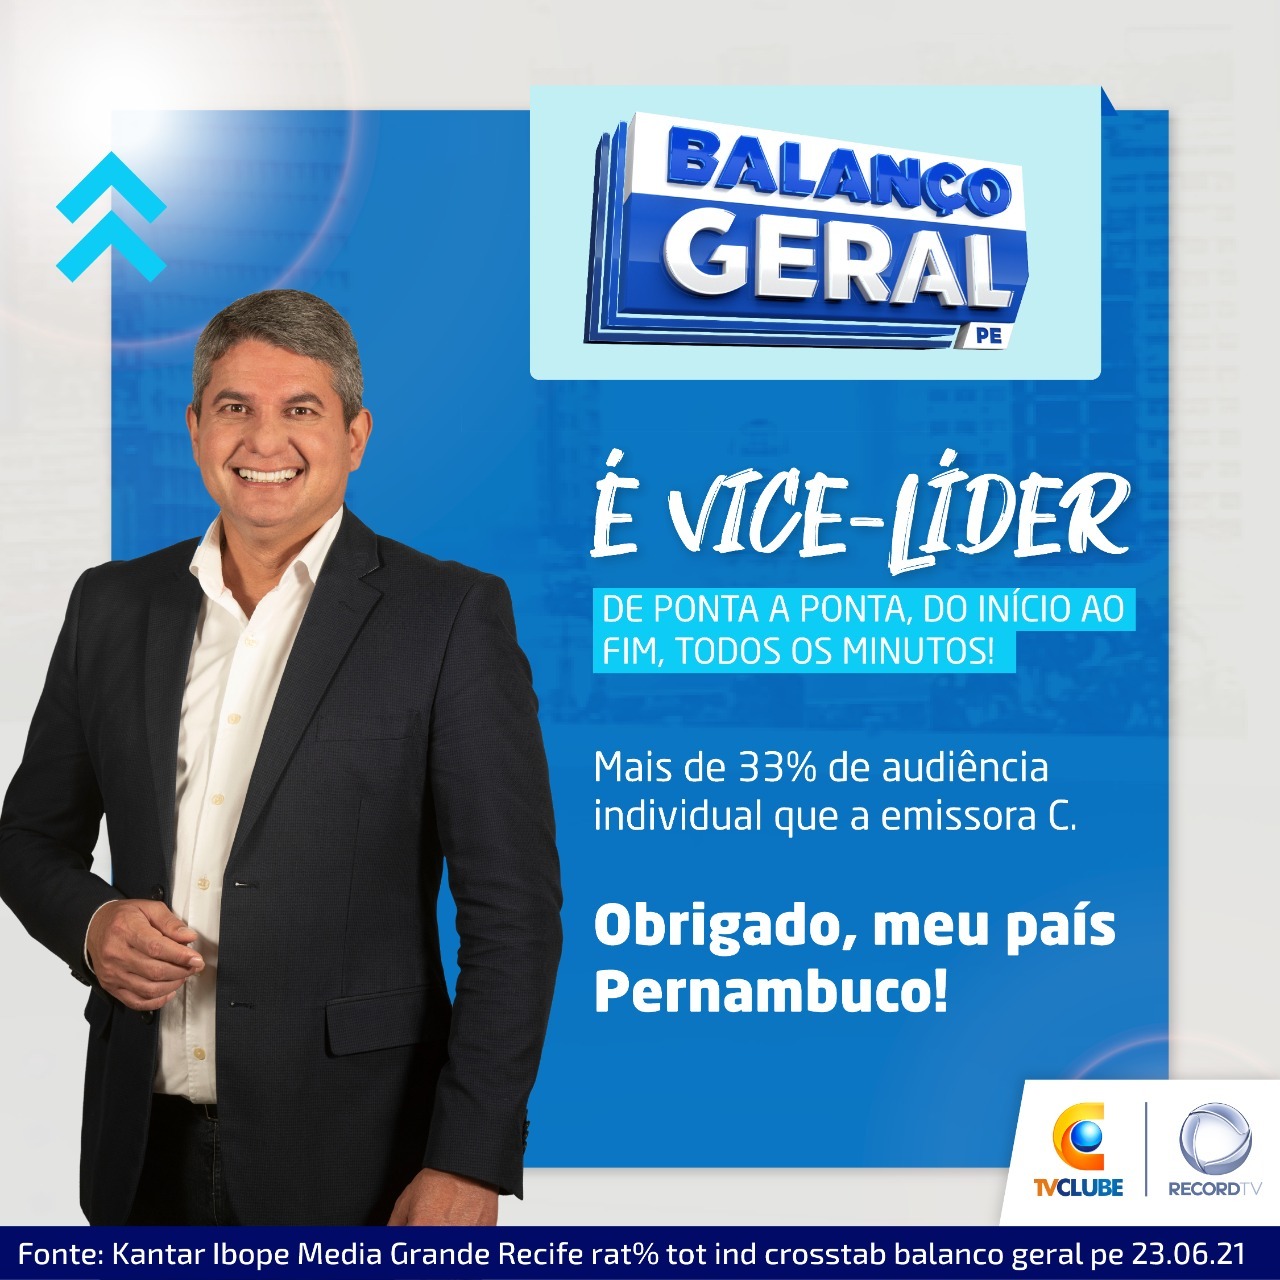 Notícia - Voz Comunicação - Recife/PE - (81) 3269.4358 - voz